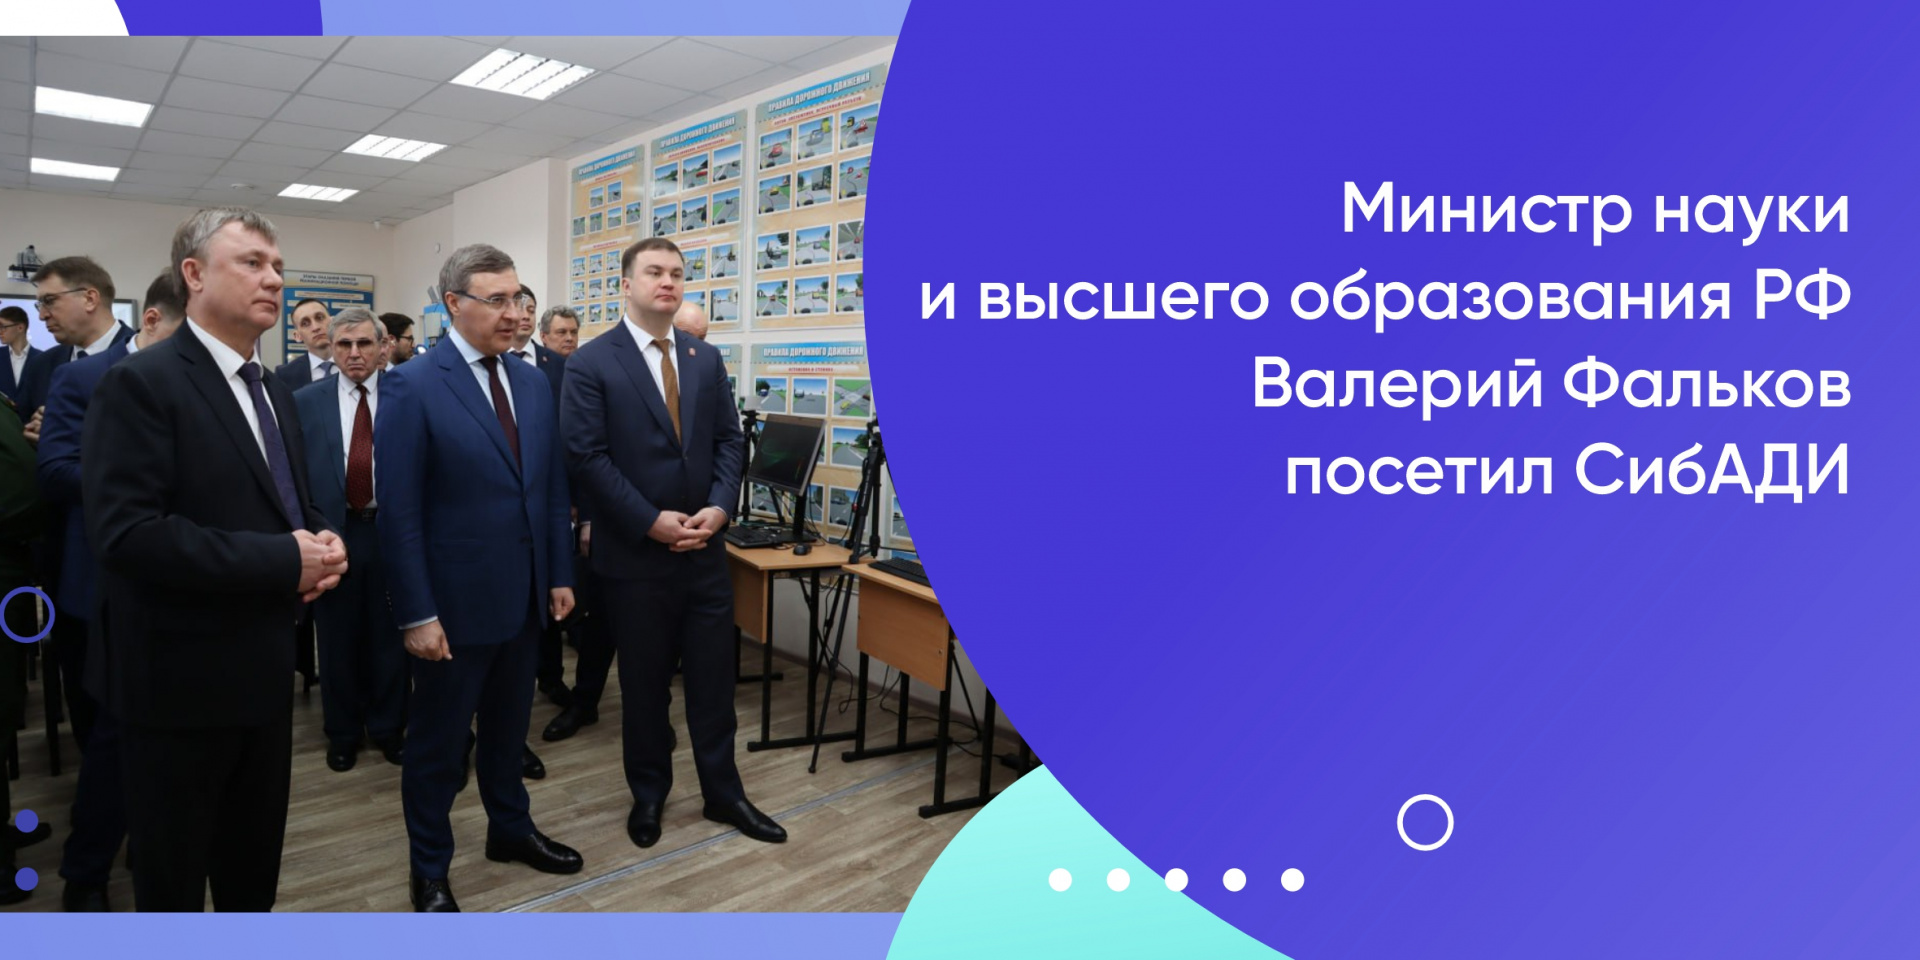 Министр науки и высшего образования РФ Валерий Фальков посетил СибАДИ